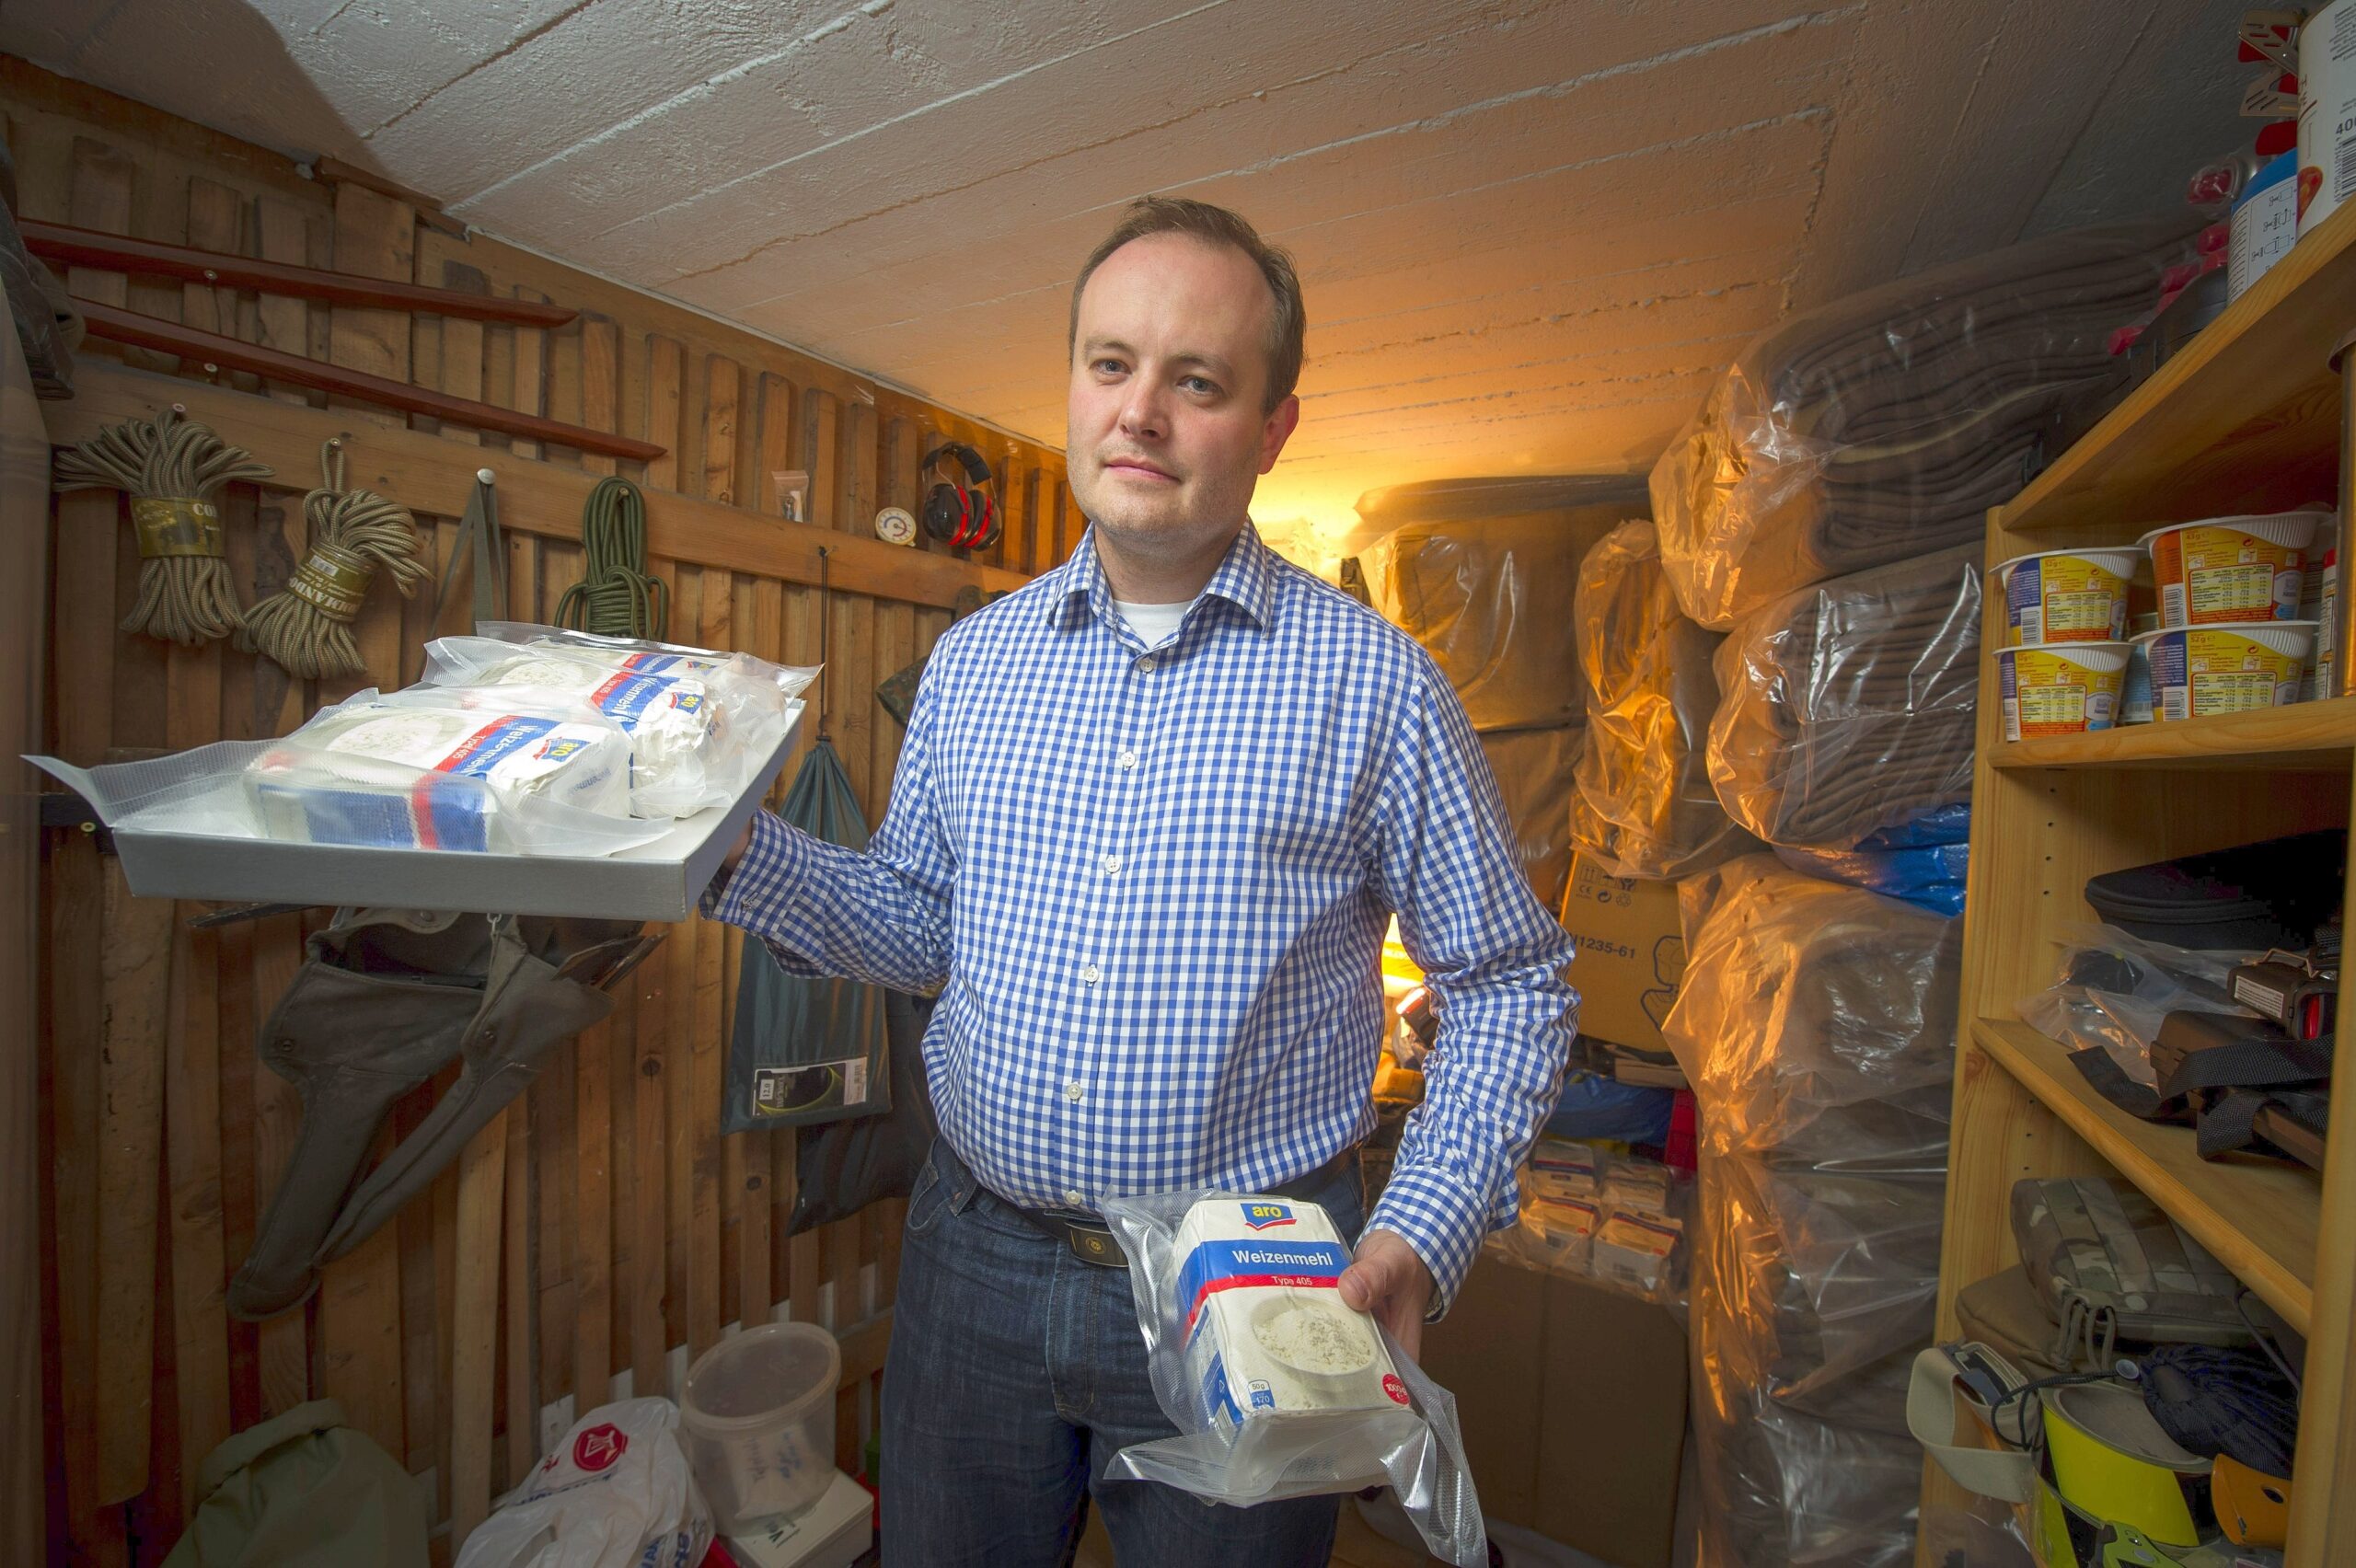 Bastian Blum aus Krefeld ist ein Prepper. (engl.: Preparation = Vorbereitung). Im Keller seines Hauses hat er Vorräte für den Katastrophenfall eingelagert. Neben Decken und Toilettenpapier bunkert er viele Lebensmittel.